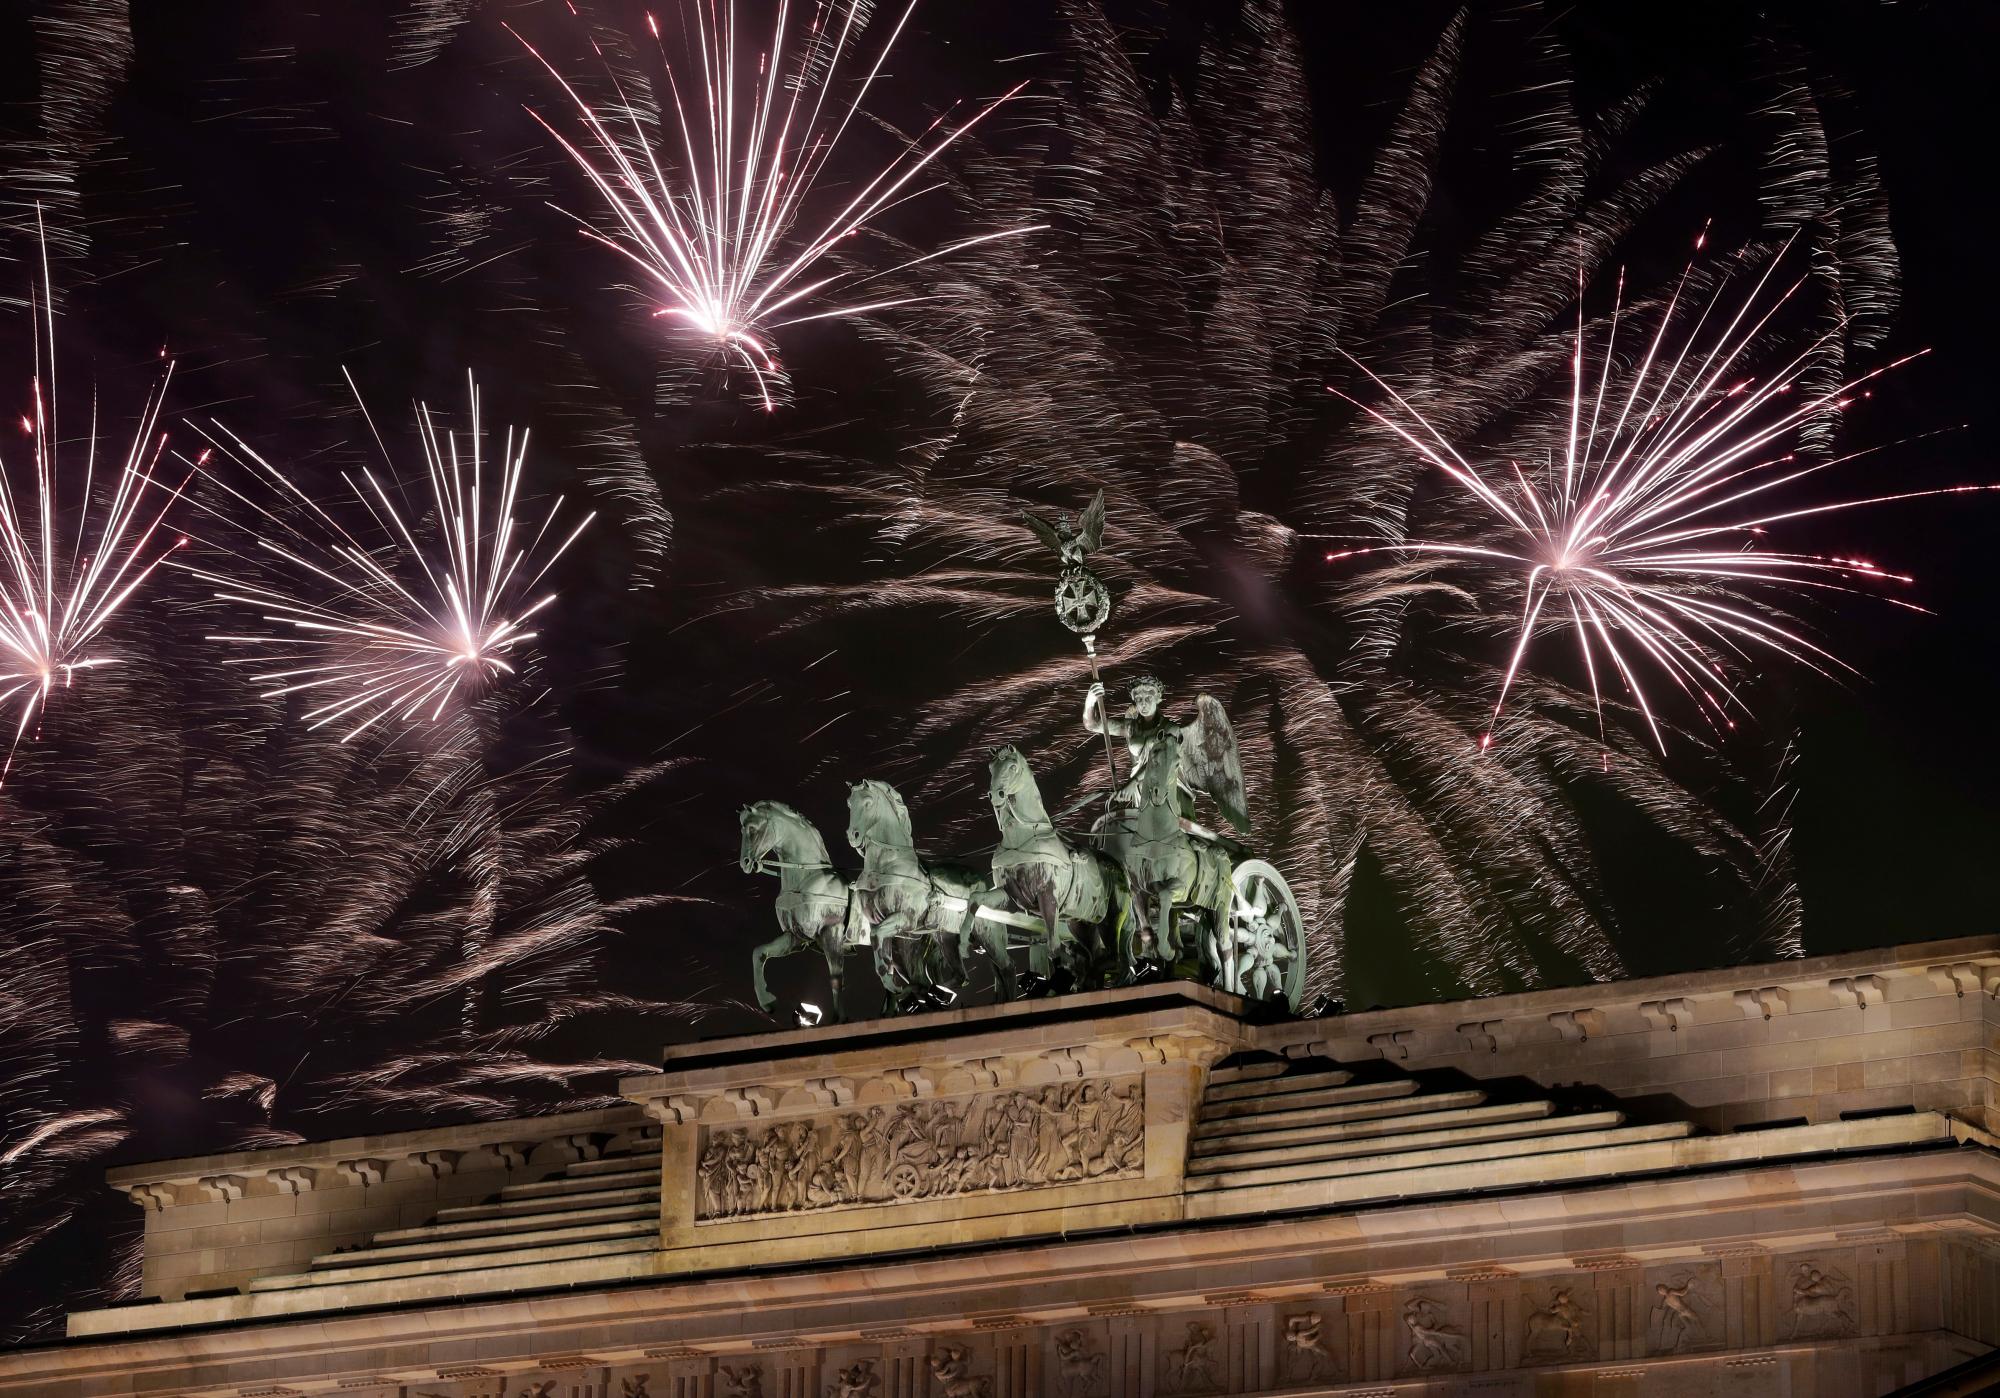 Los fuegos artificiales iluminan el cielo sobre la Cuadriga en la Puerta de Brandeburgo poco después de la medianoche en Berlín, Alemania, el martes 1 de enero de 2019. Cientos de miles de personas celebraron la víspera de Año Nuevo dándole la bienvenida al nuevo año 2019 en la capital de Alemania.